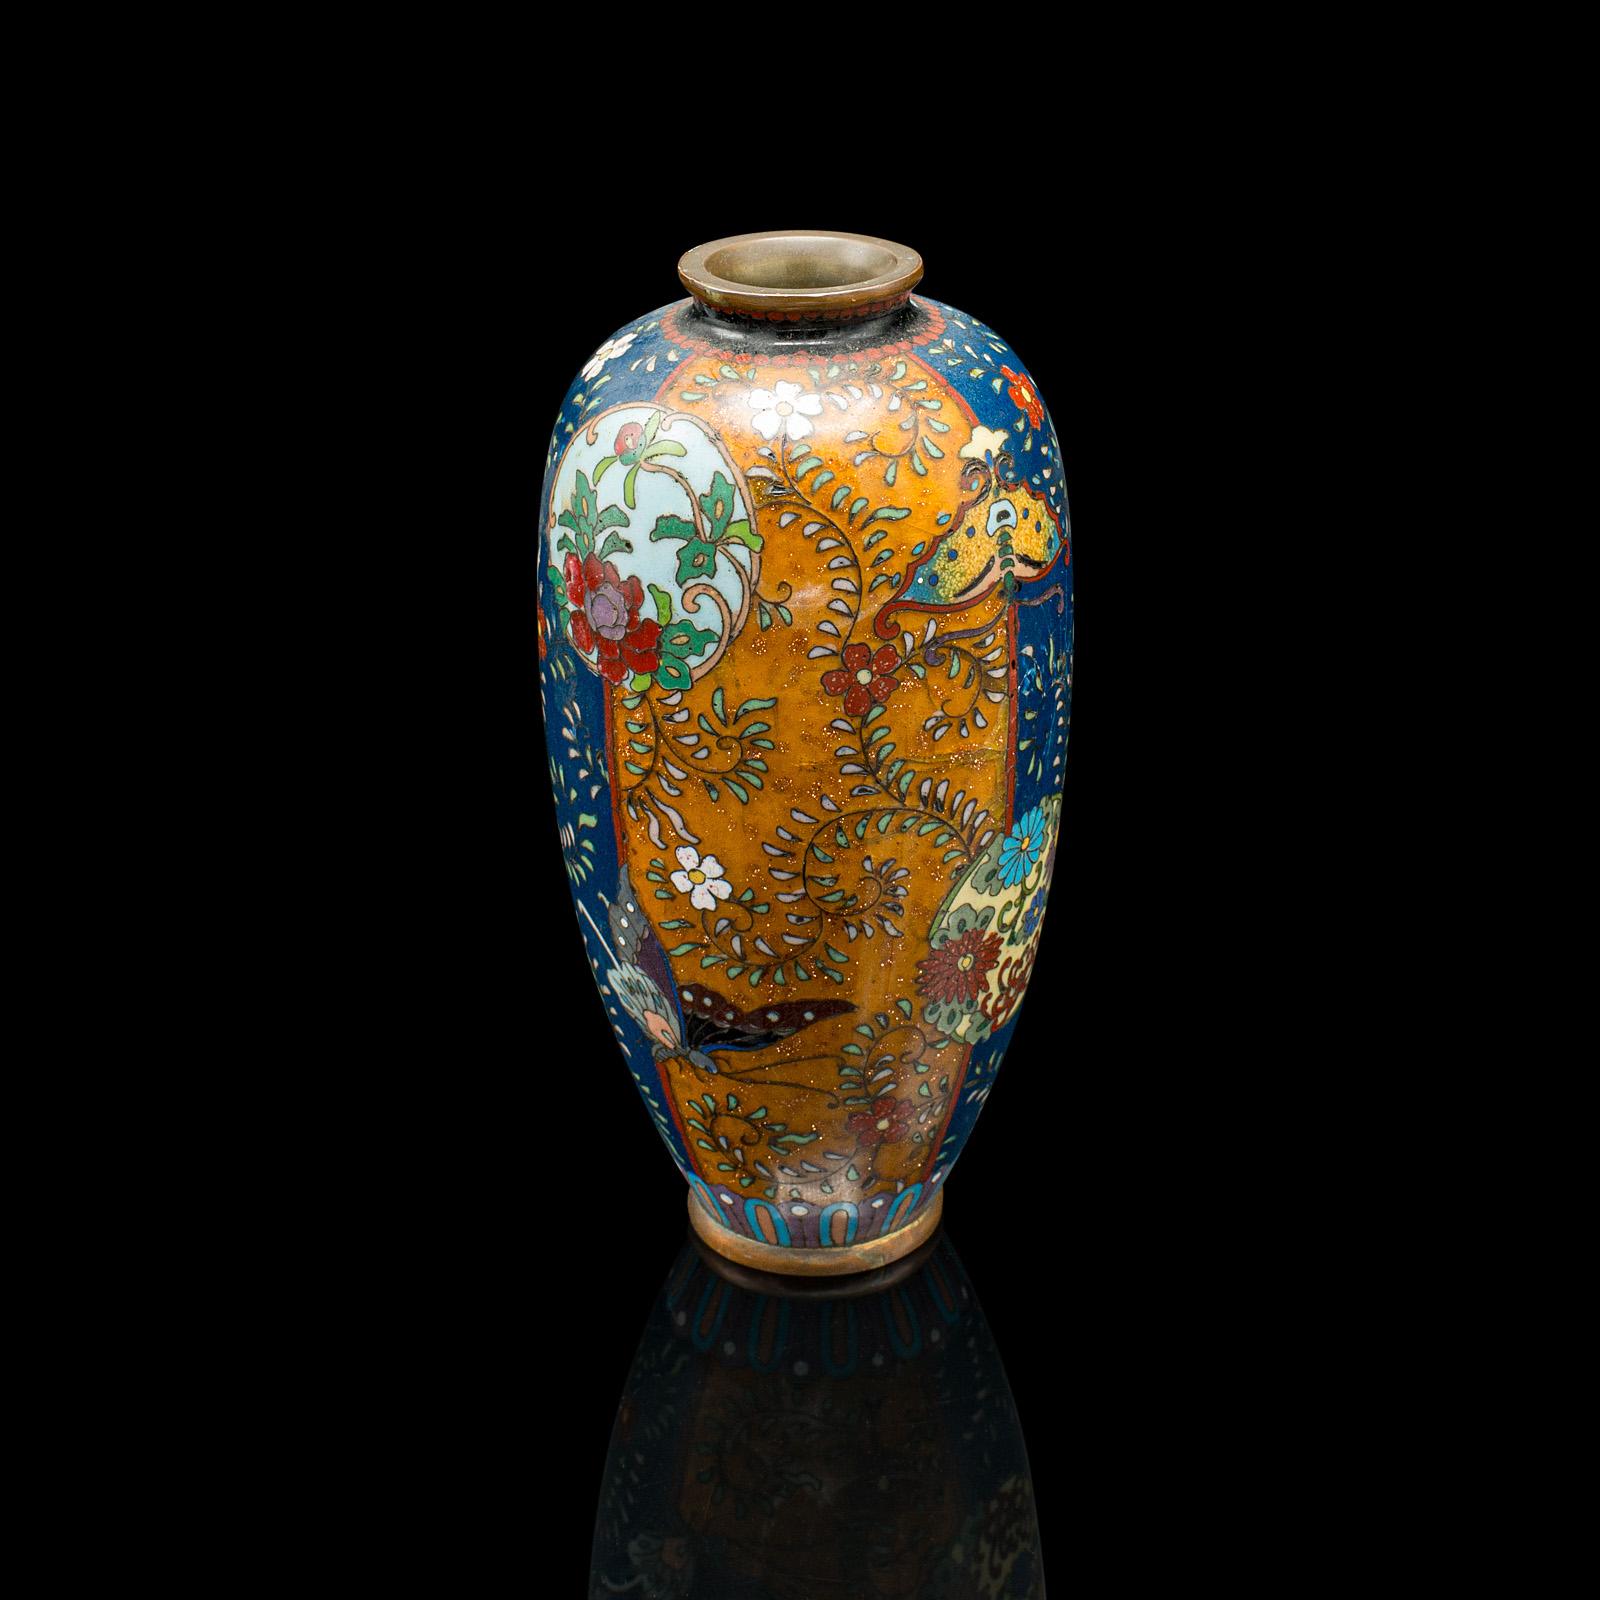 Dies ist ein kleines antikes Meiji posy Vase. Japanische Cloisonne-Baluster-Urne aus Nagoya, aus der späten viktorianischen Zeit, um 1900.

Charmantes Beispiel für Nagoya-Cloisonne
Zeigt eine wünschenswerte gealterte Patina im Originalzustand
Die